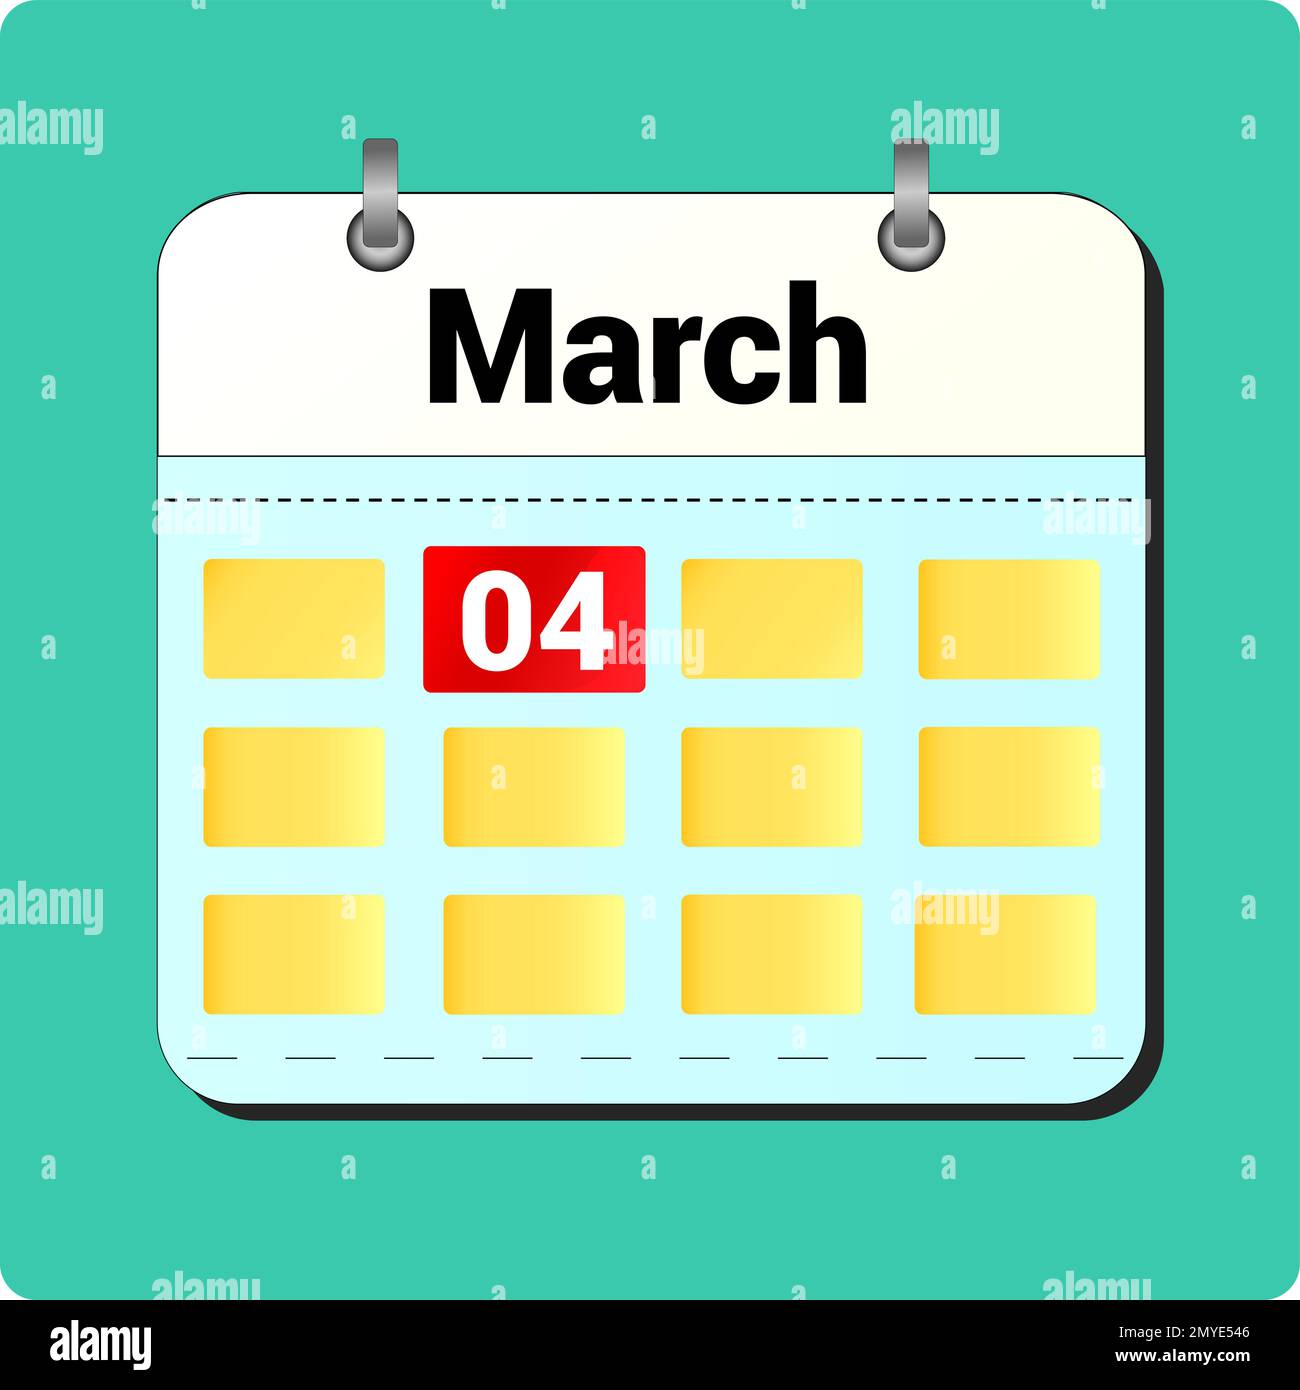 Dessin vectoriel de calendrier, date 04 mars sur la page Illustration de Vecteur